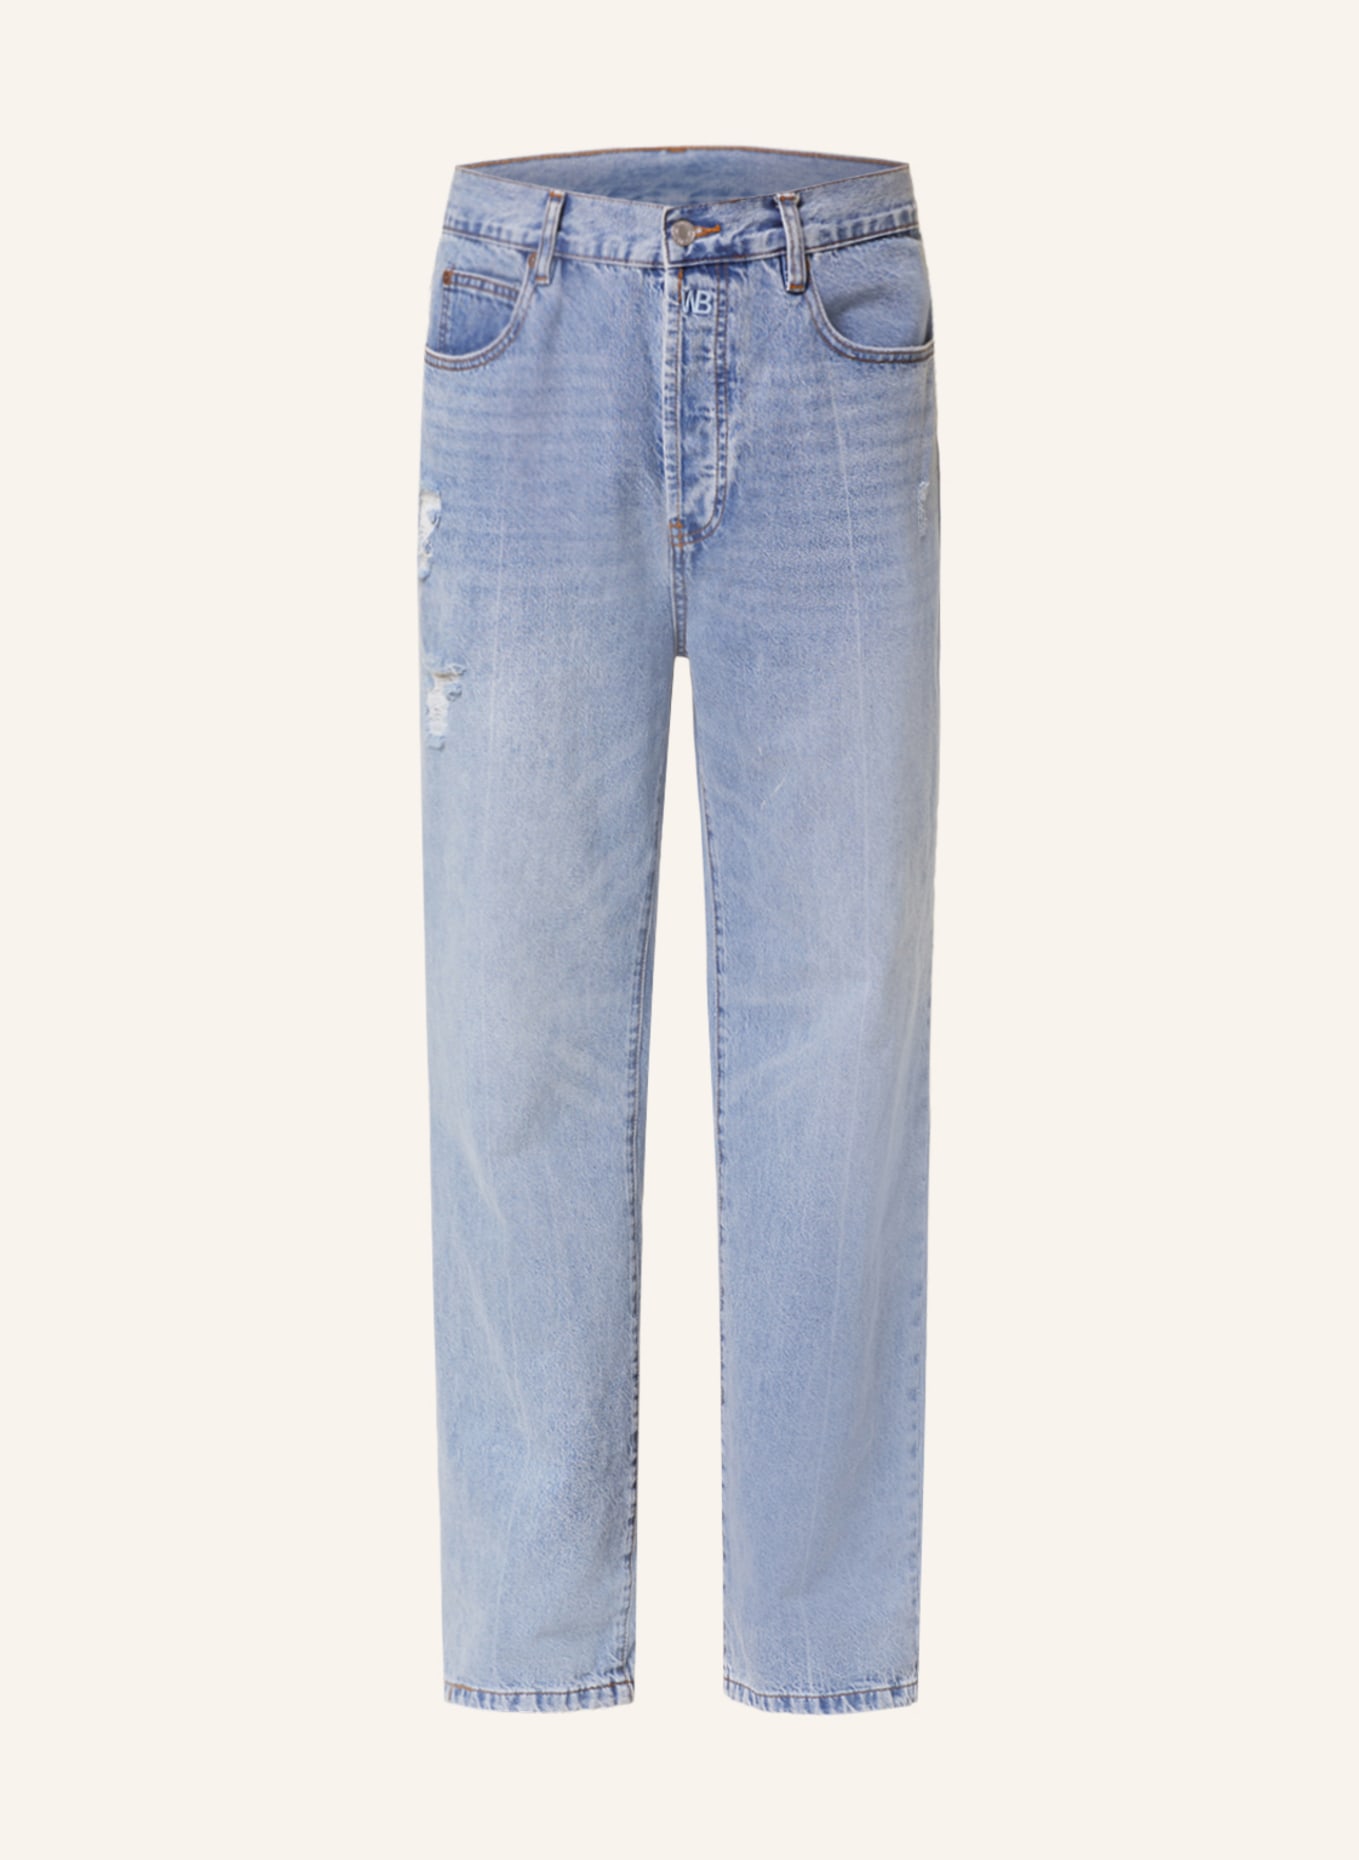 WRSTBHVR Jeans DILLAN Regular Fit, Farbe: 5014 MID BLUE (Bild 1)